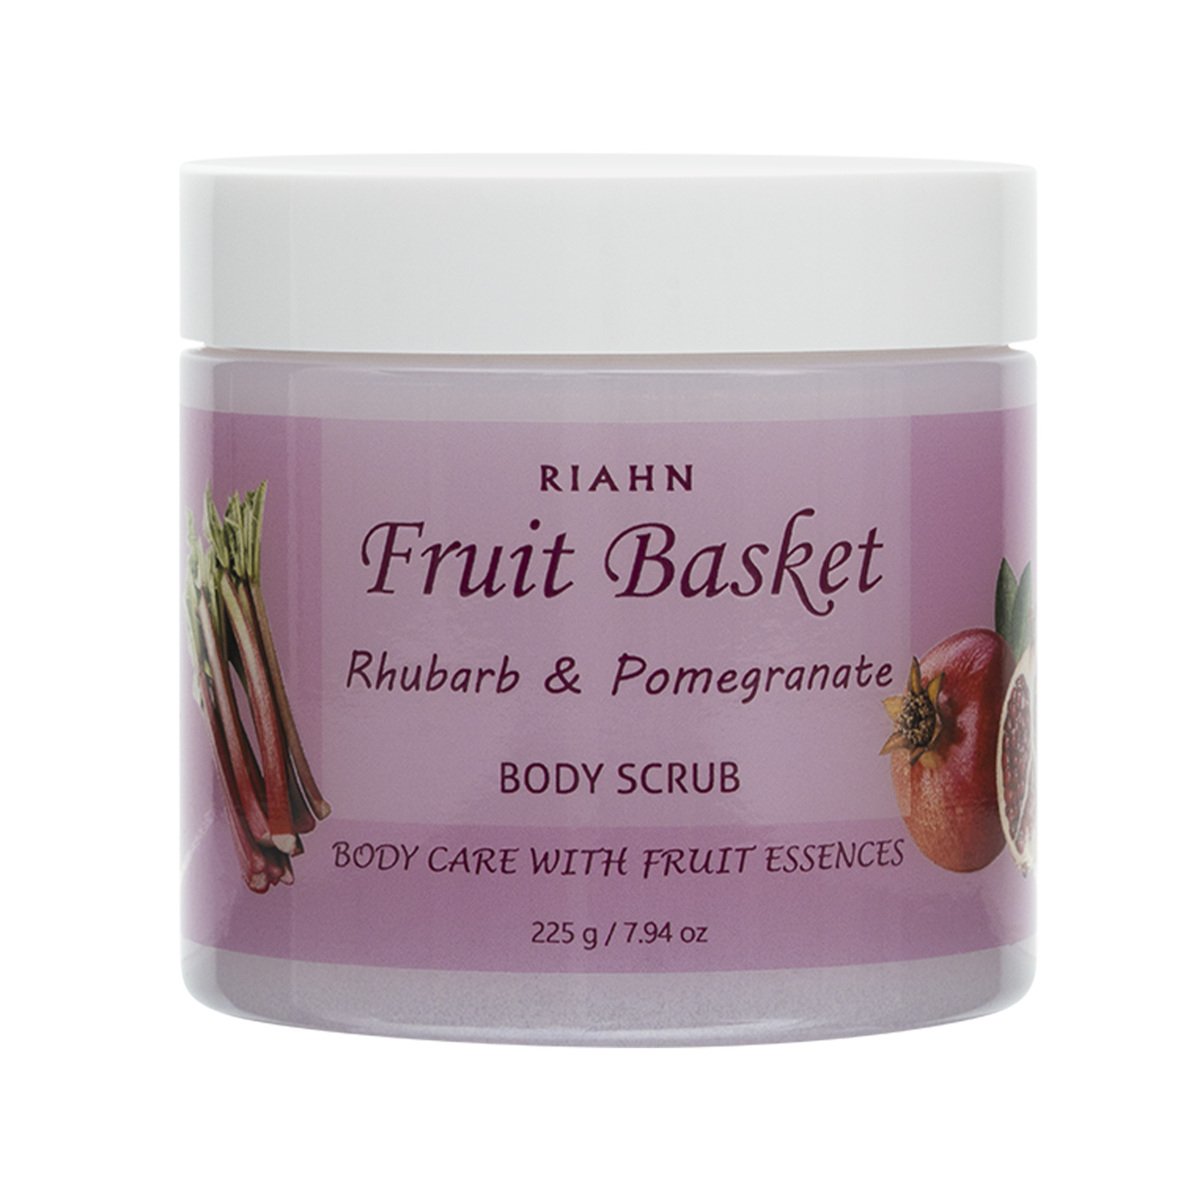 Riahn Fruit Basket Rhubarb & Pomegranate Body Scrub Jar 225g